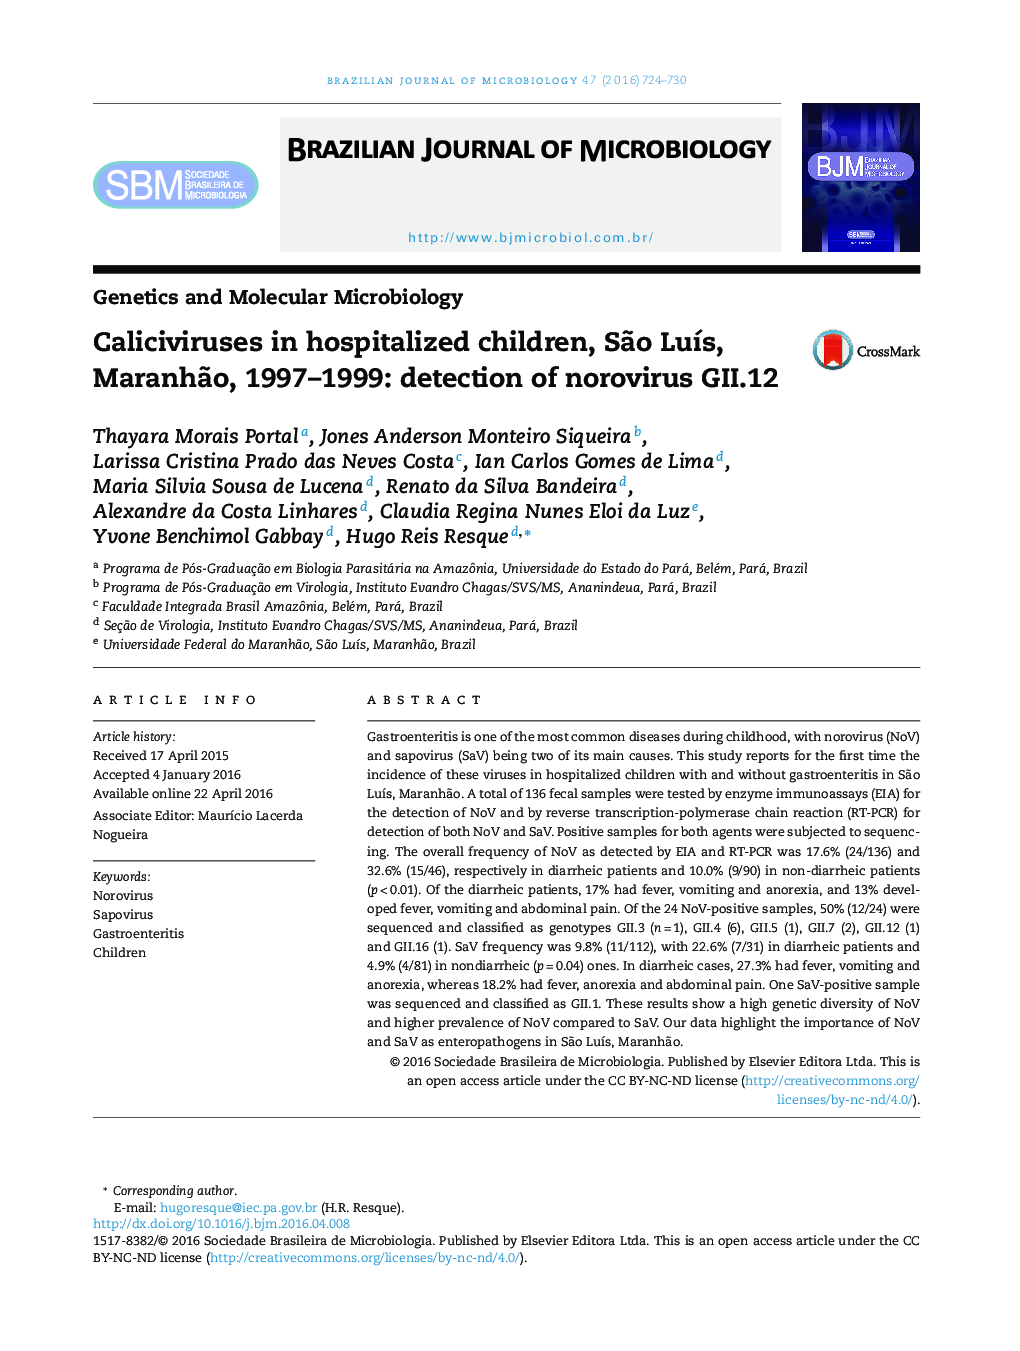 Caliciviruses in hospitalized children, São Luís, Maranhão, 1997–1999: detection of norovirus GII.12